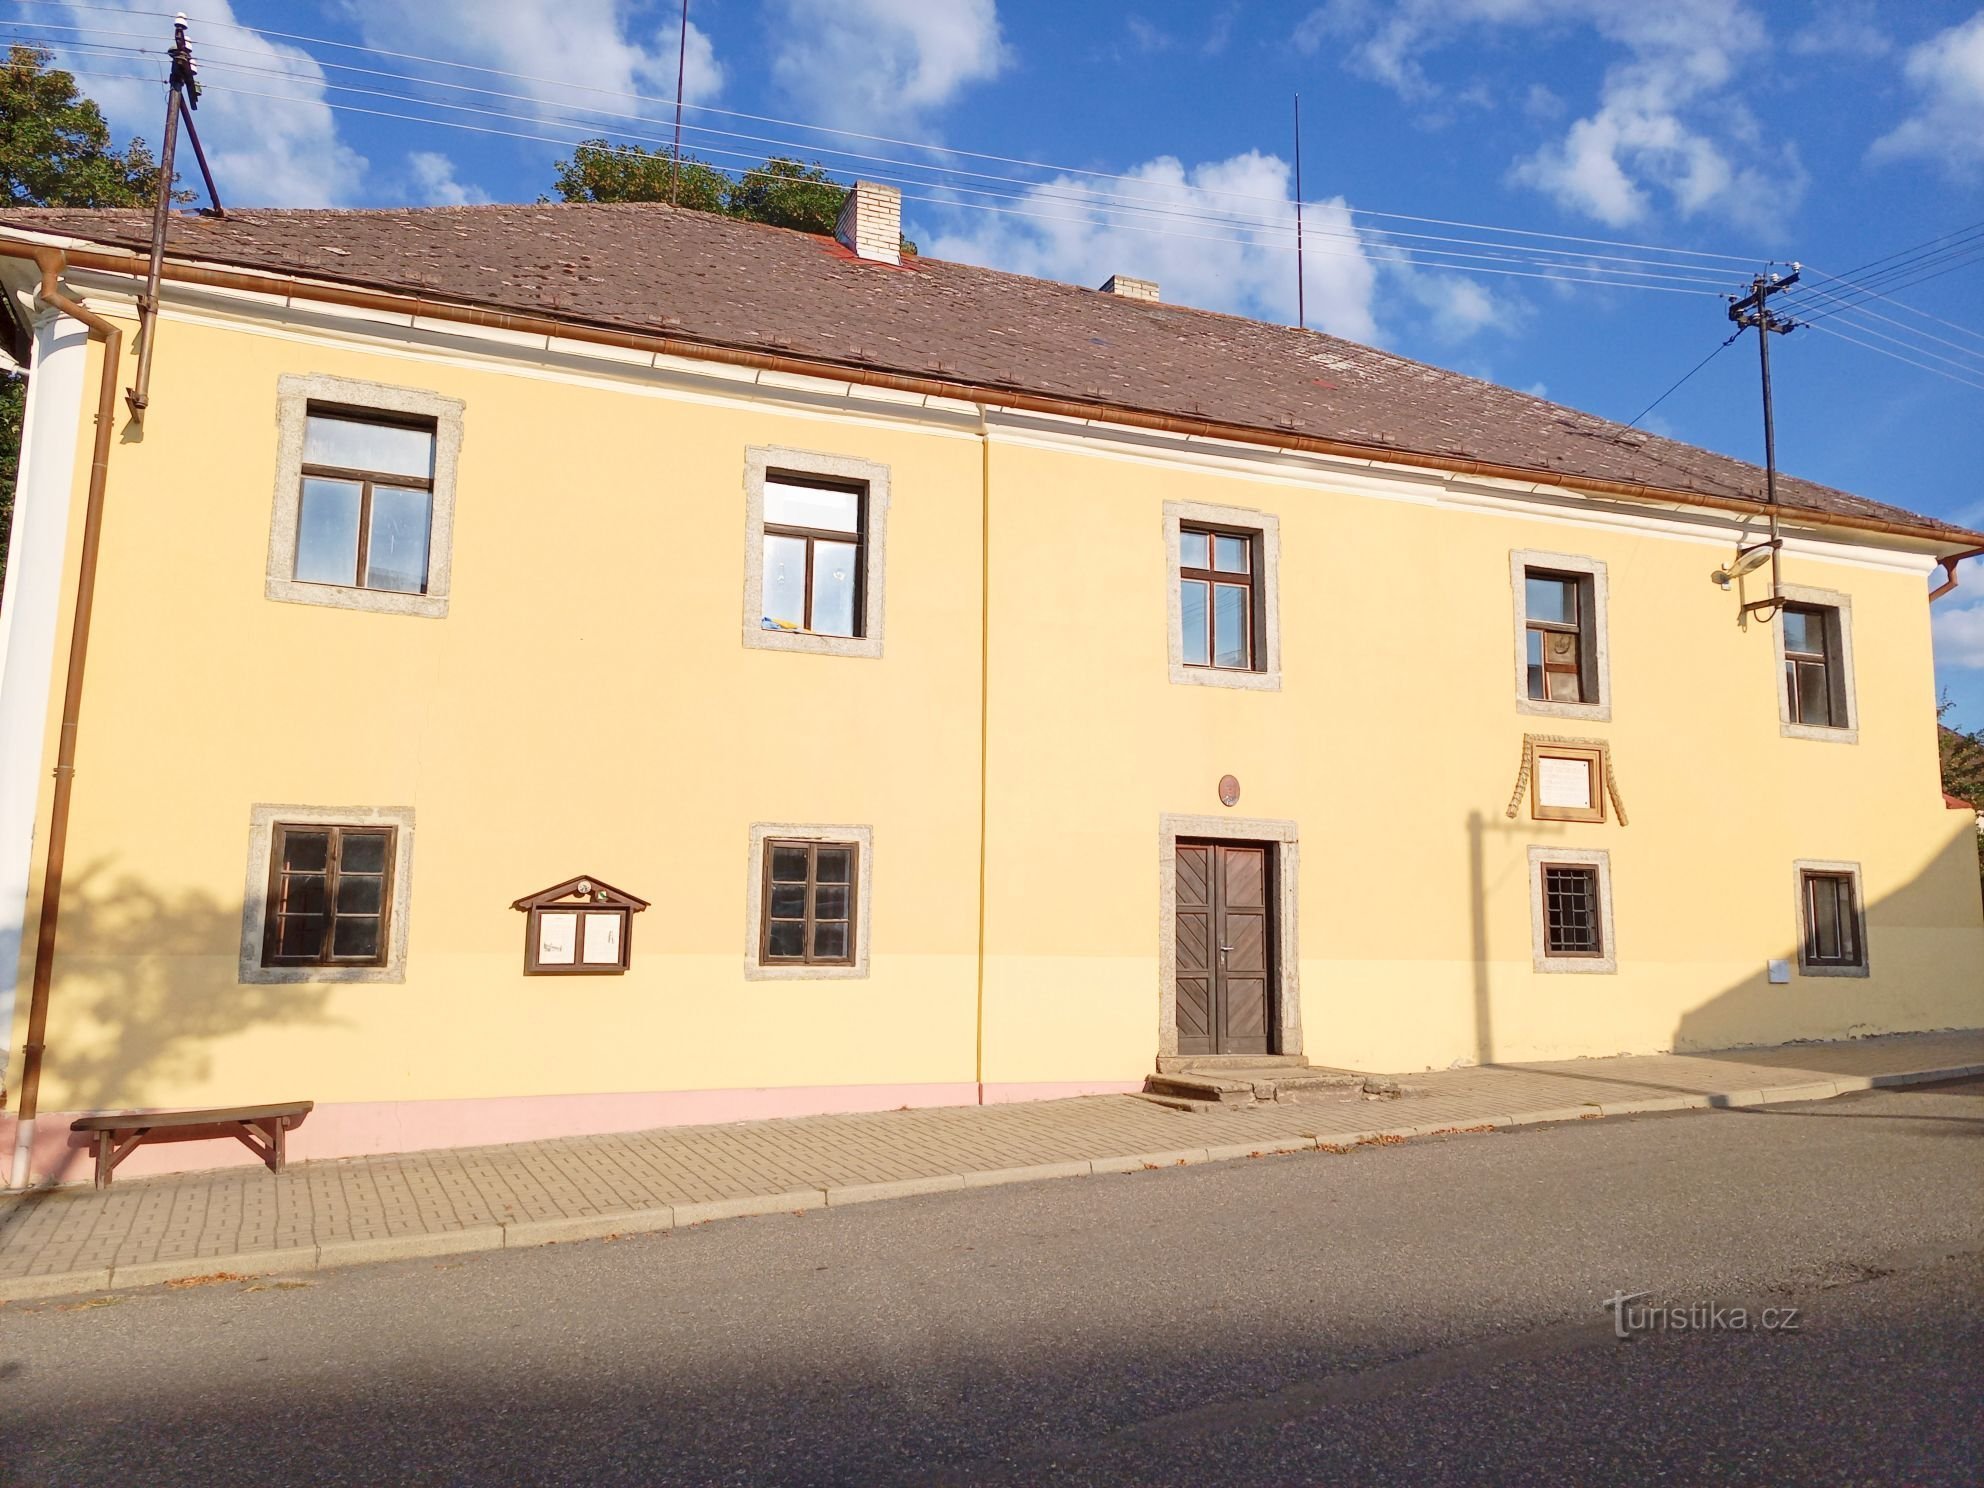 1. Casa parroquial en Nadějkov desde 1738